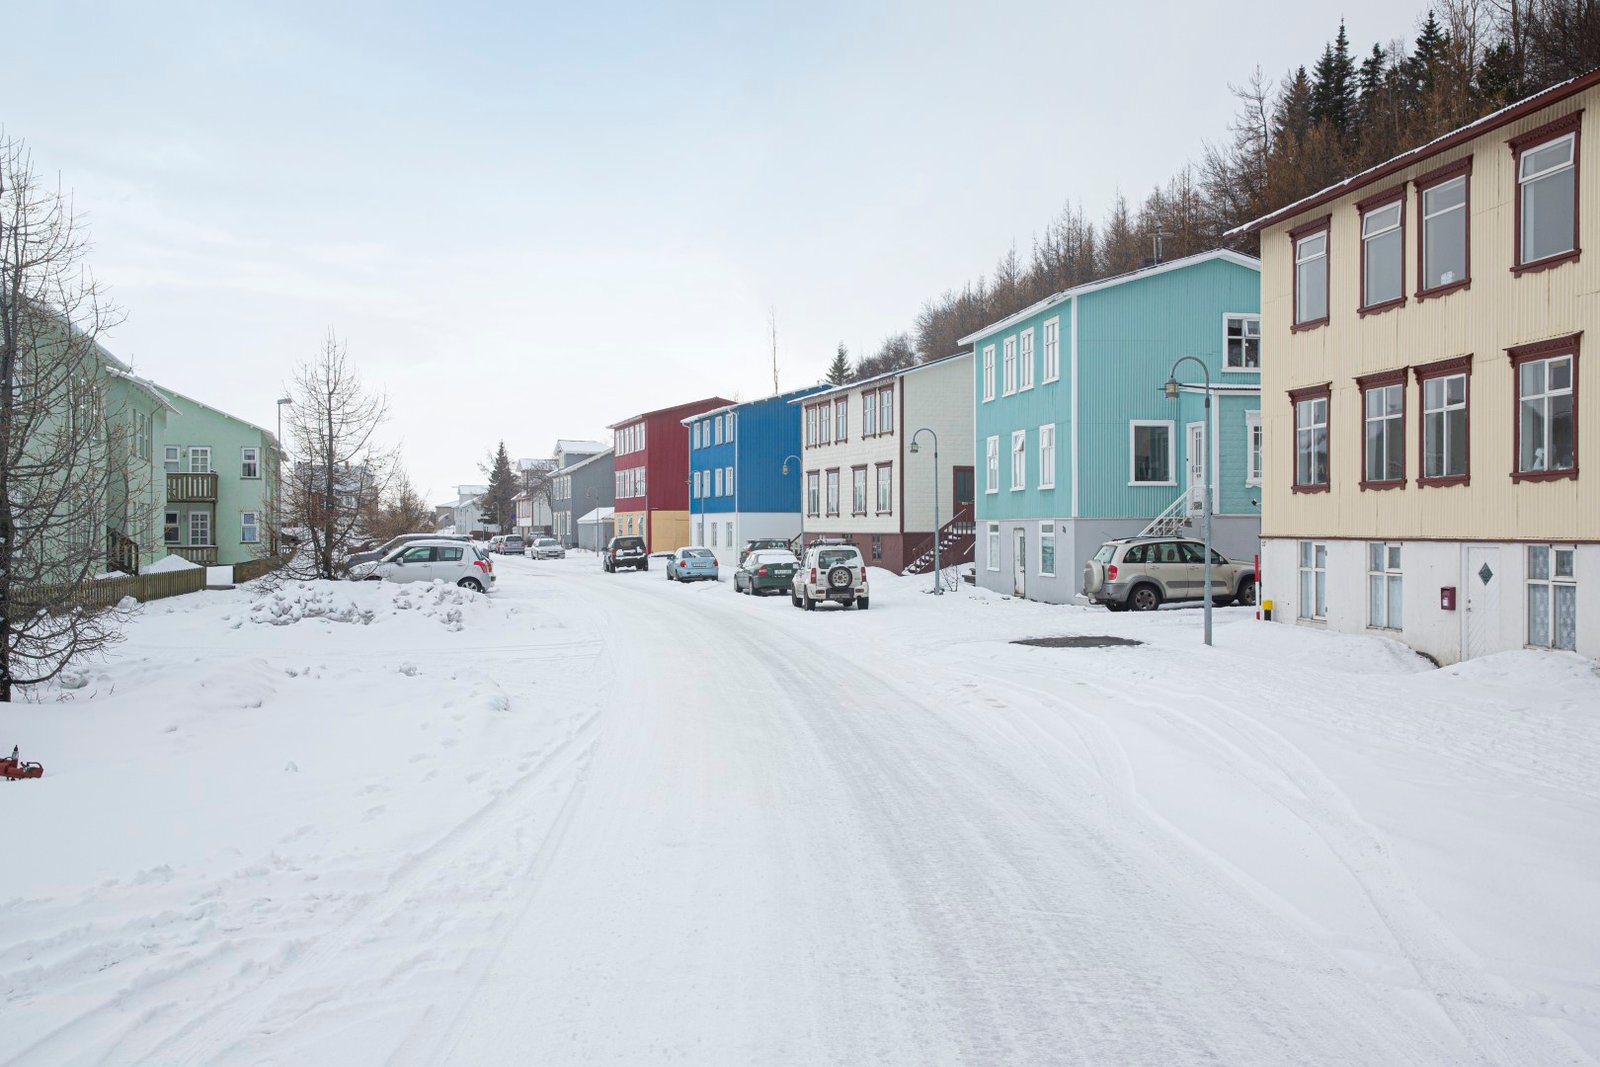 Snowy street scene in Akureyri